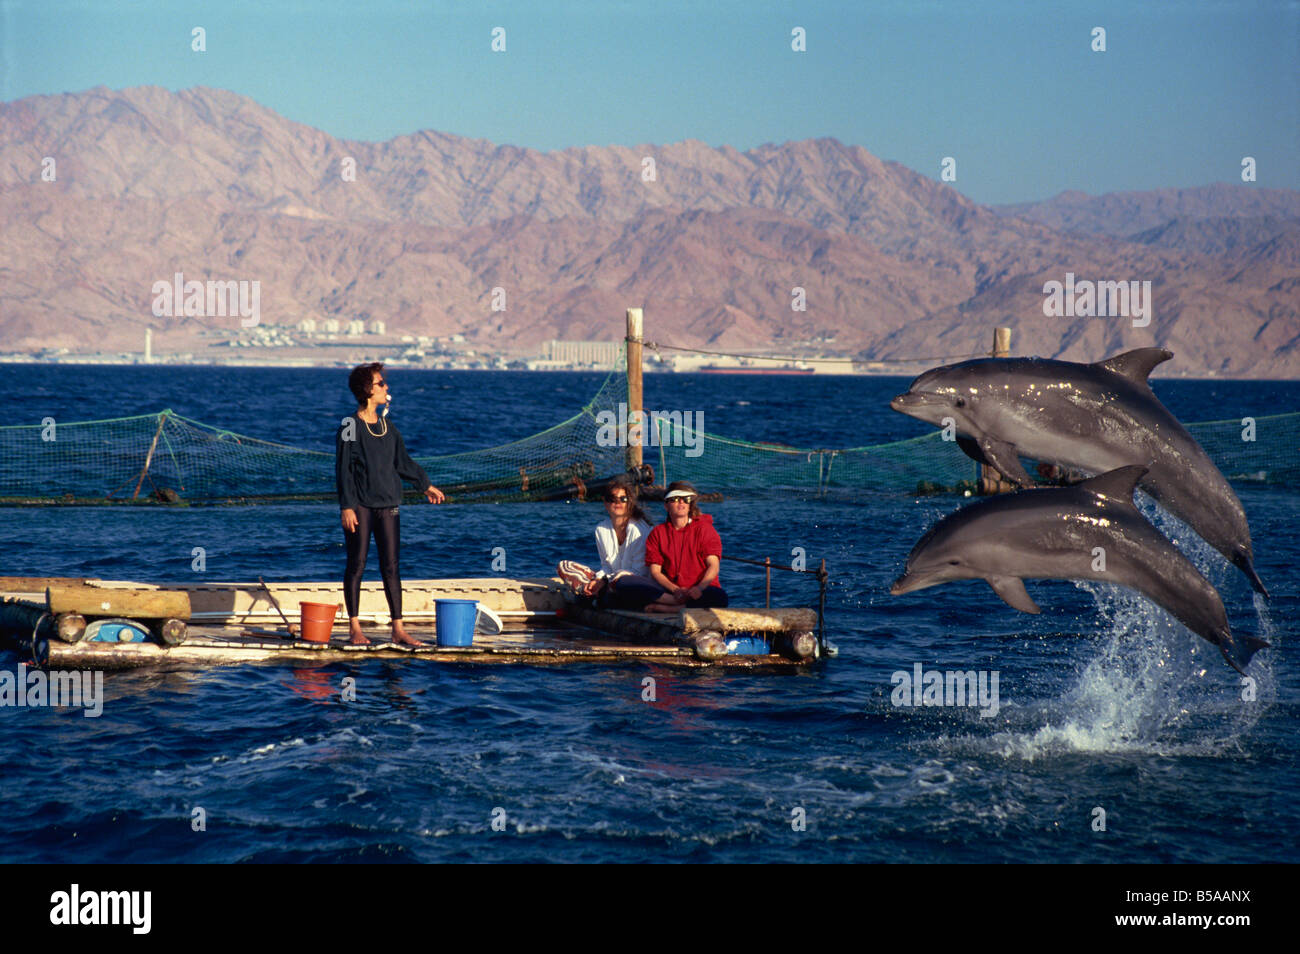 Donna fischio di soffiaggio per attirare i delfini saltando per i turisti per visualizzare al Dolphin Reef, Eilat, Israele, Medio Oriente Foto Stock